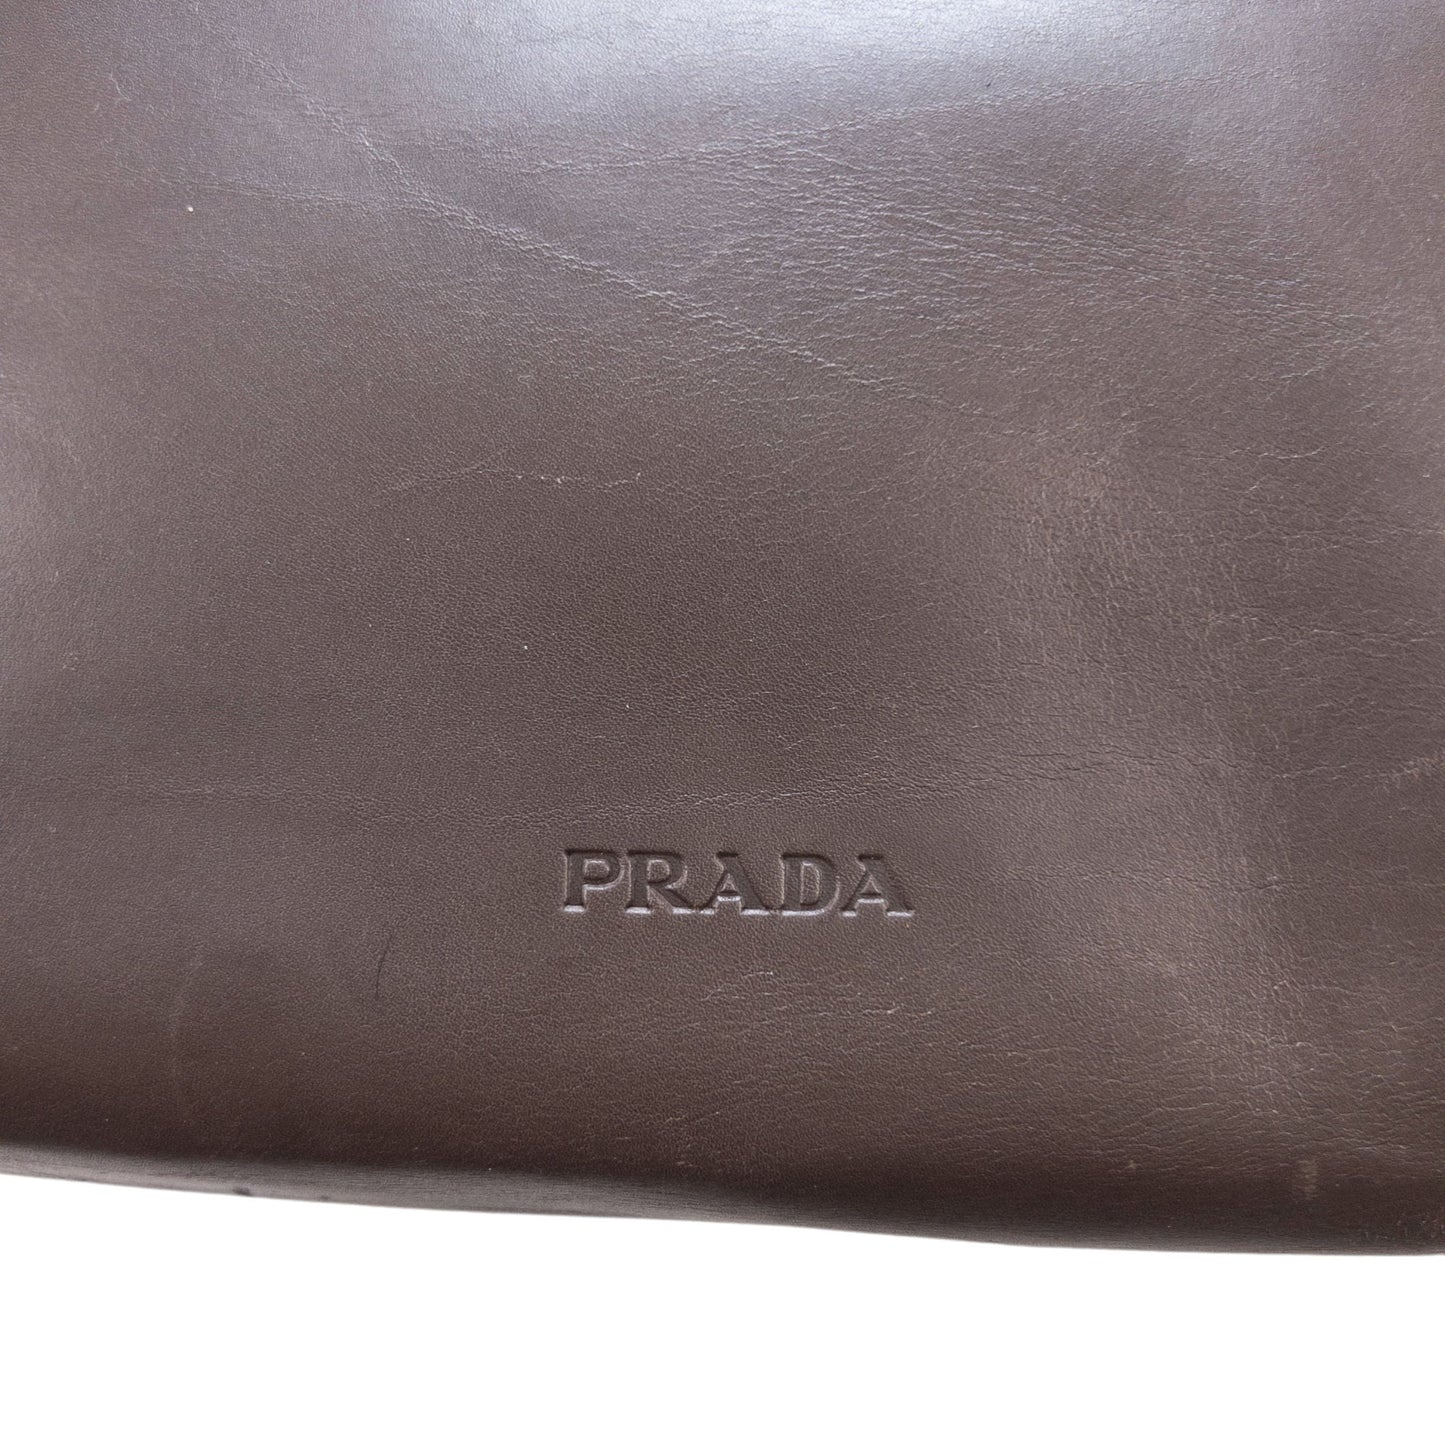 Vintage Prada Leather Shoulder Bag